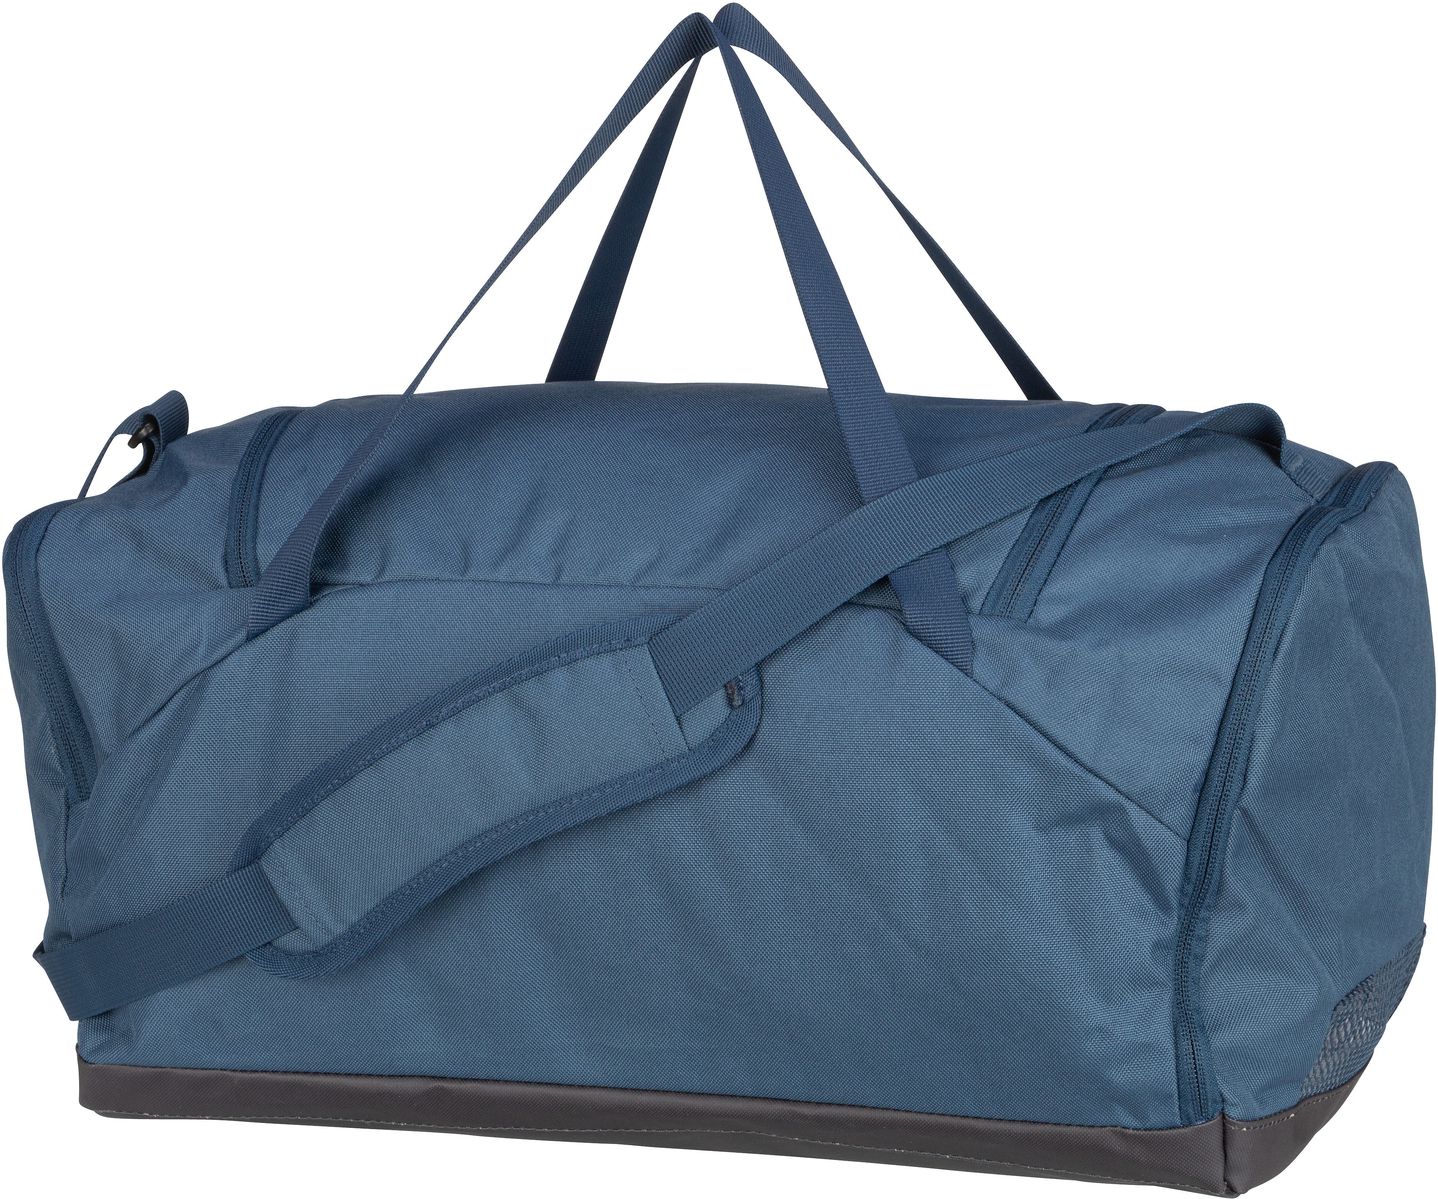 Deuter  Hopper - Duffle Bag - Blau (Marine/Graphite)